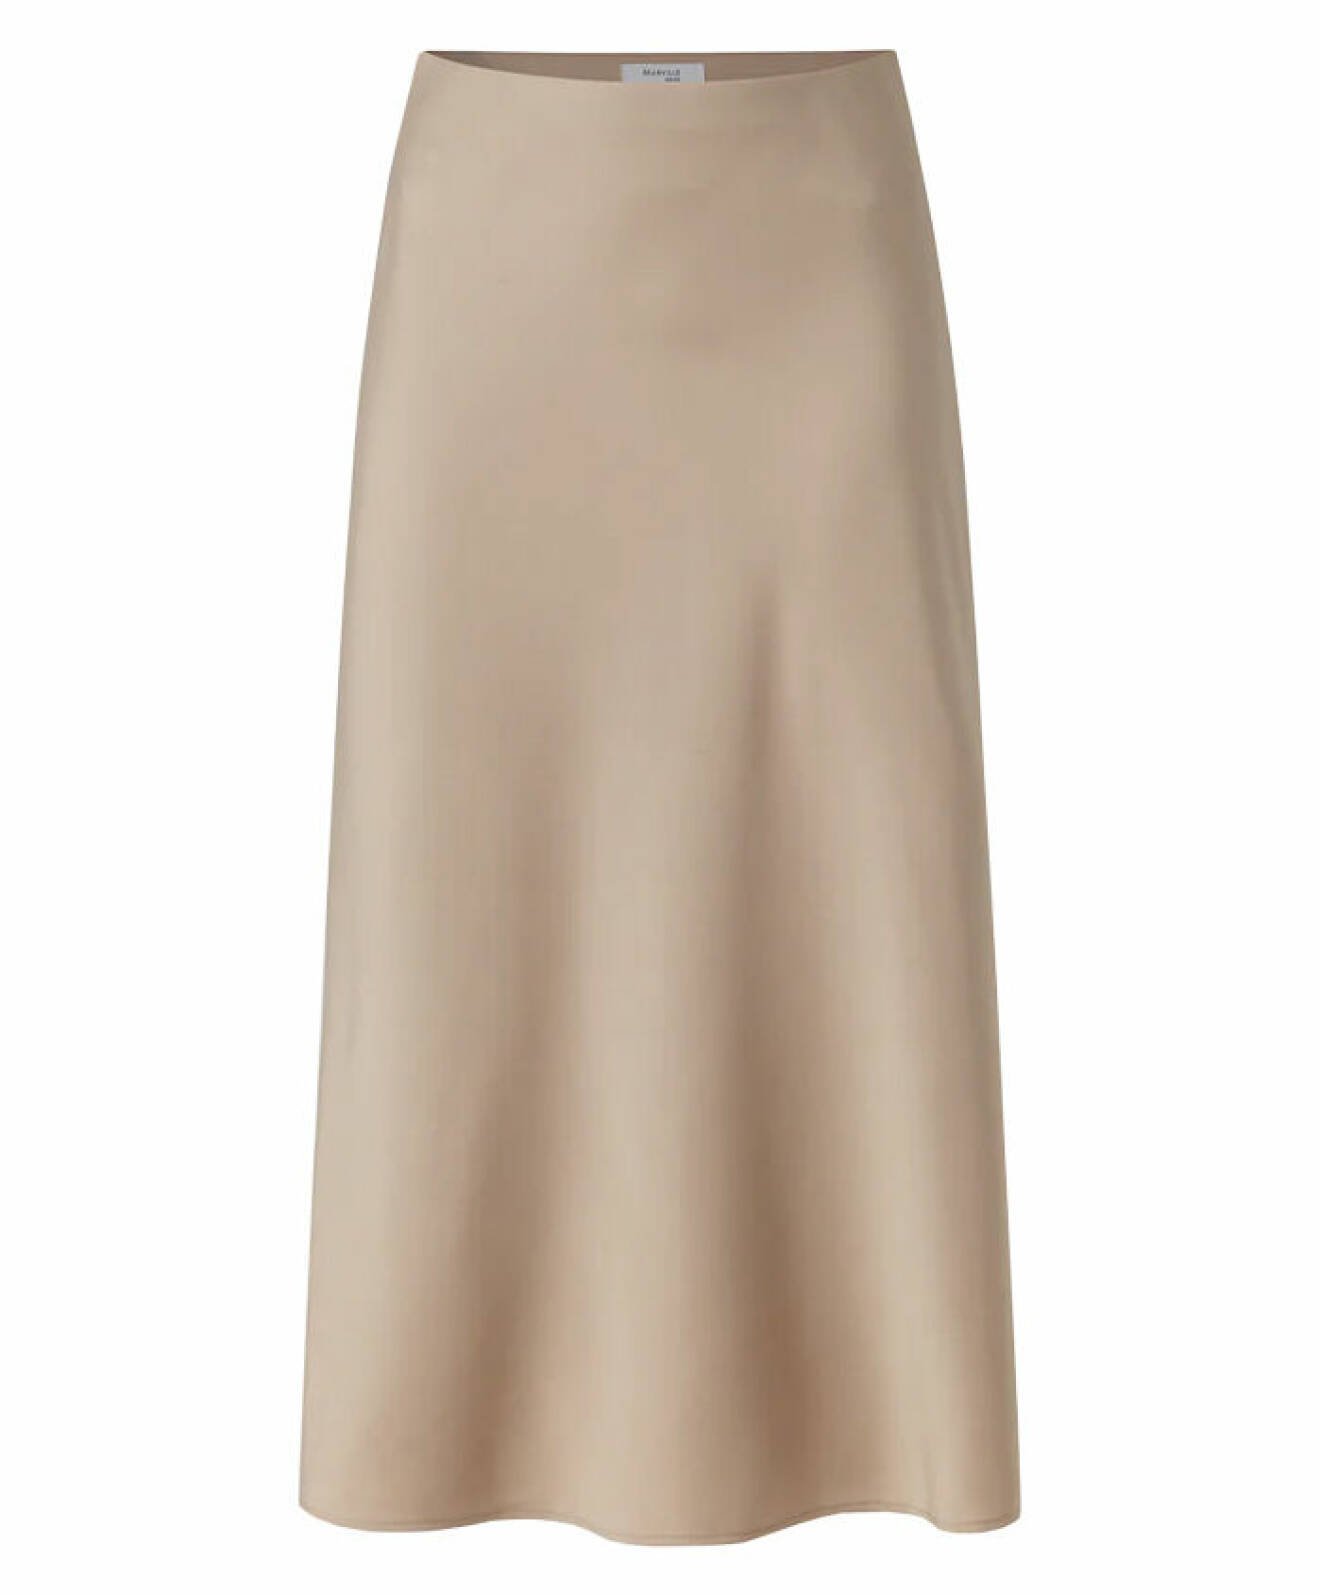 Beige elegant kjol från Carin Wester.